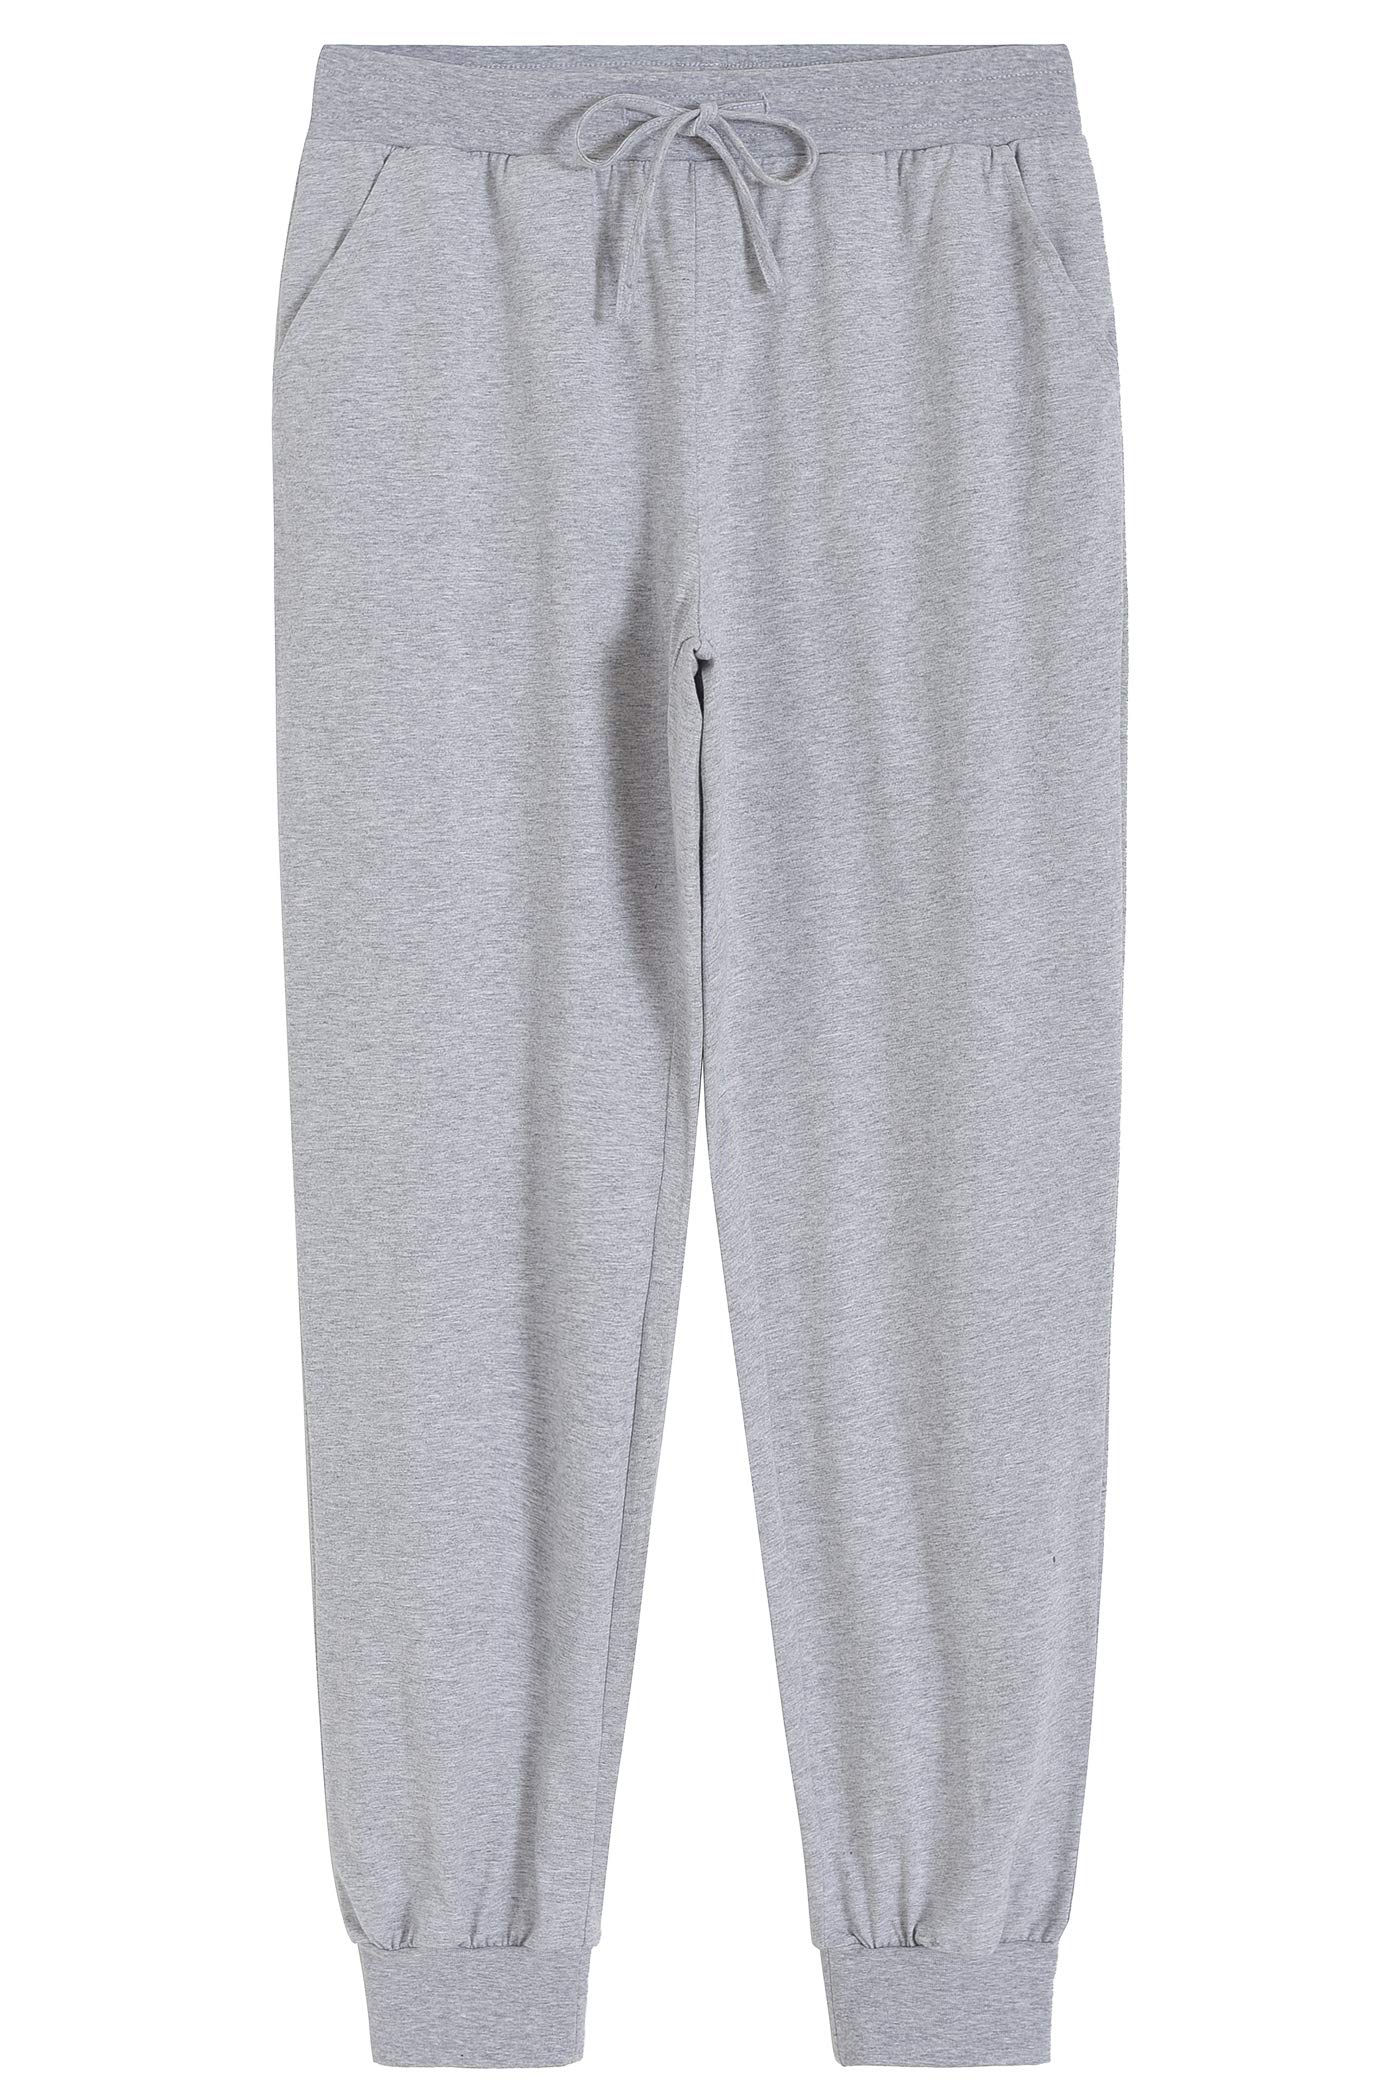 Women's Cotton Pajama Joggers Knit Lounge Pants - Latuza